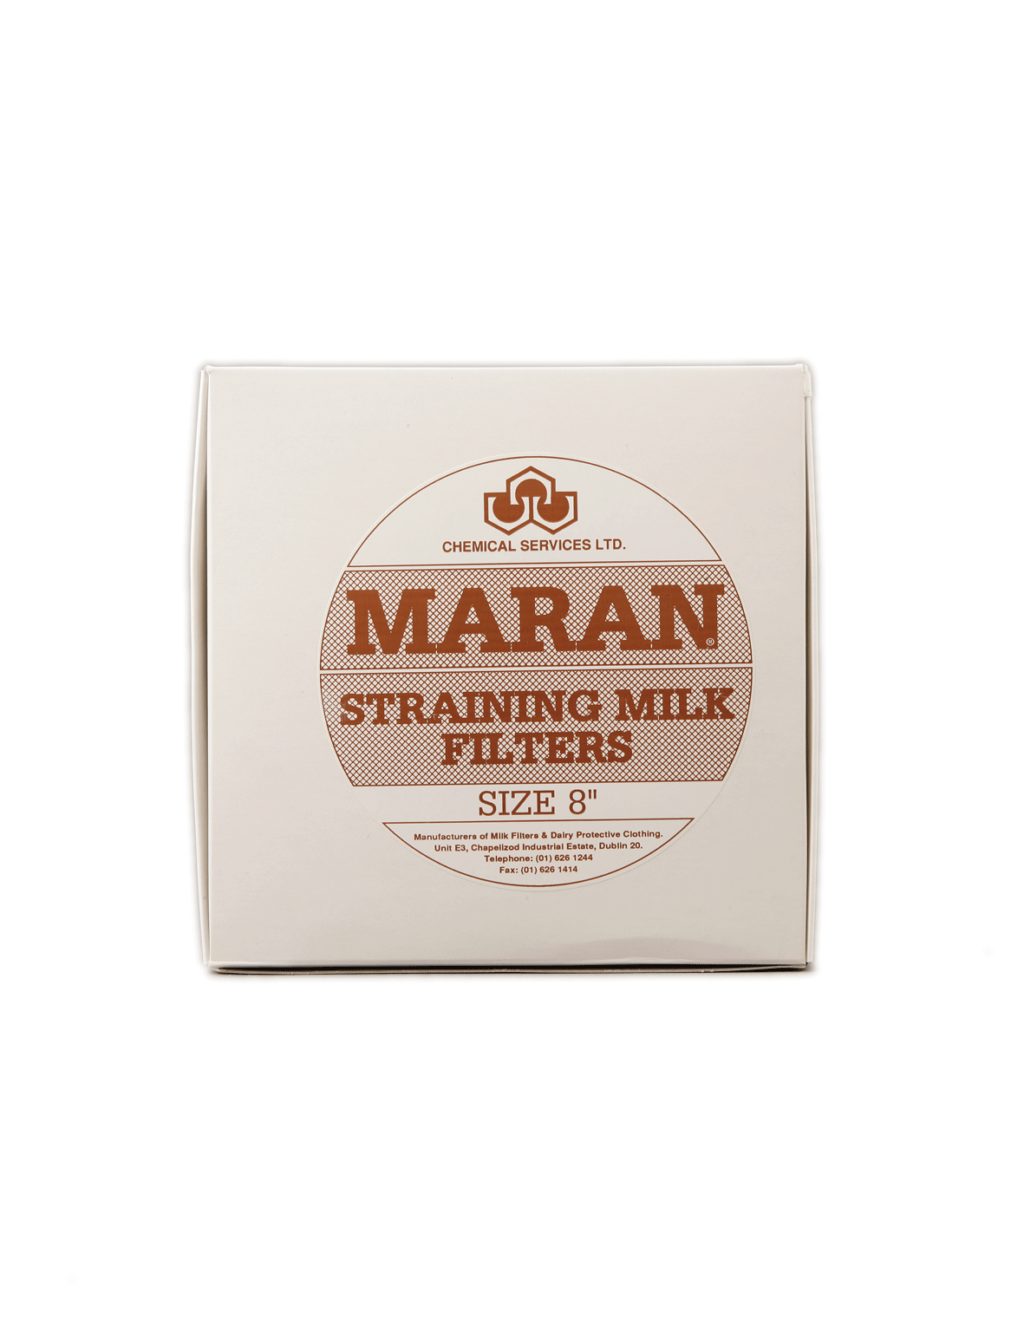 Milk Filters Maran 8 Inch (100)